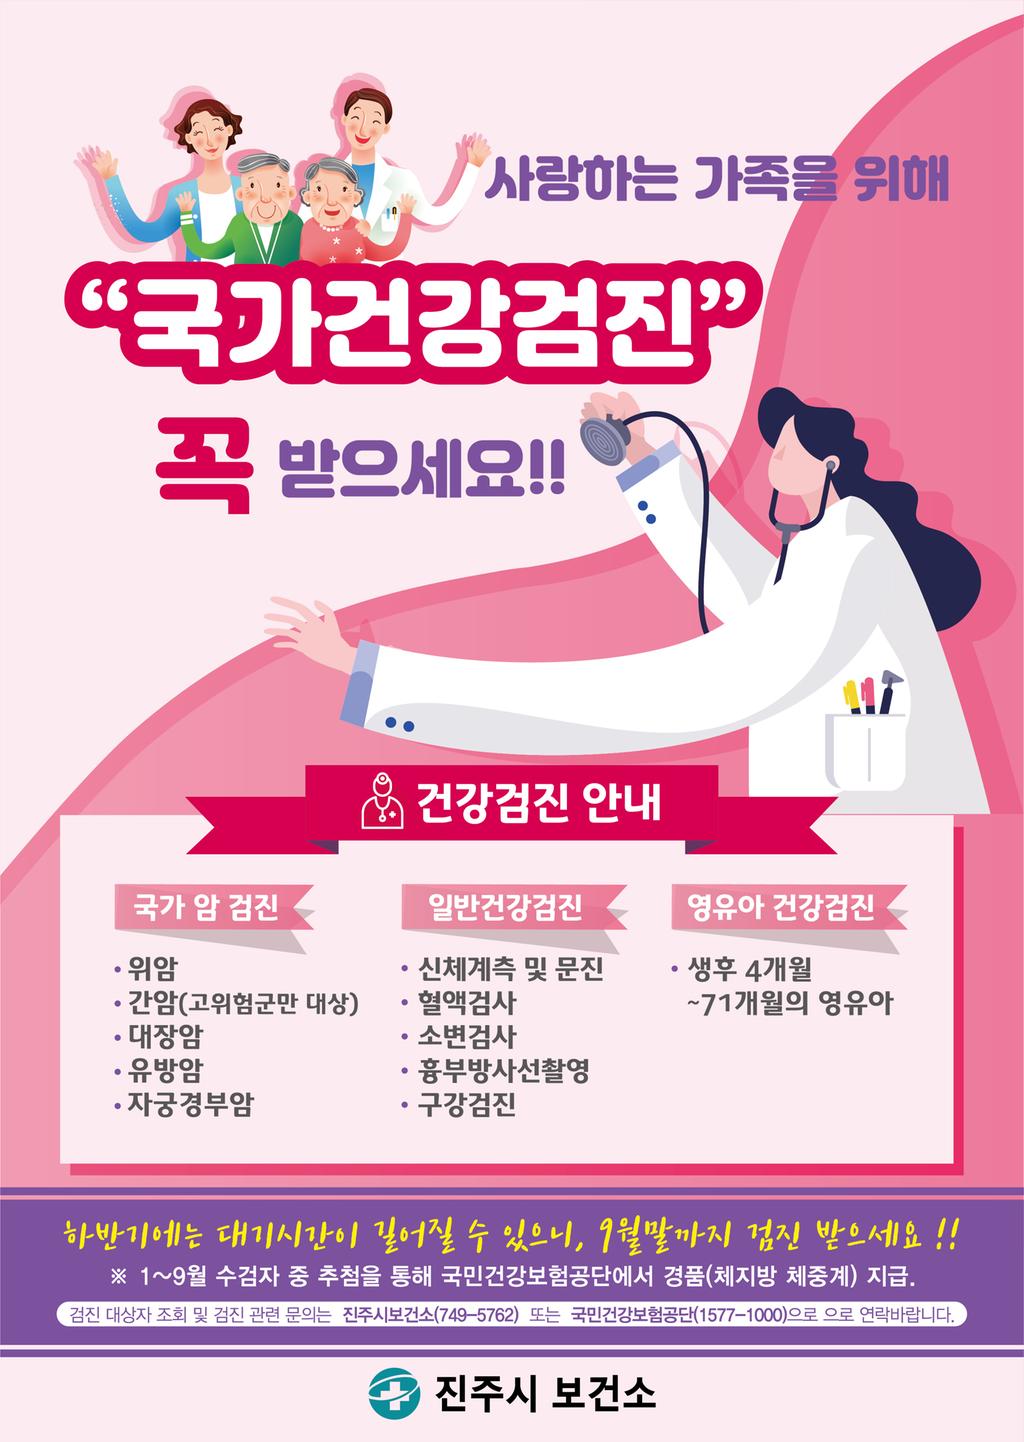 건강길라잡이(국가건강검진) 홍보 자료